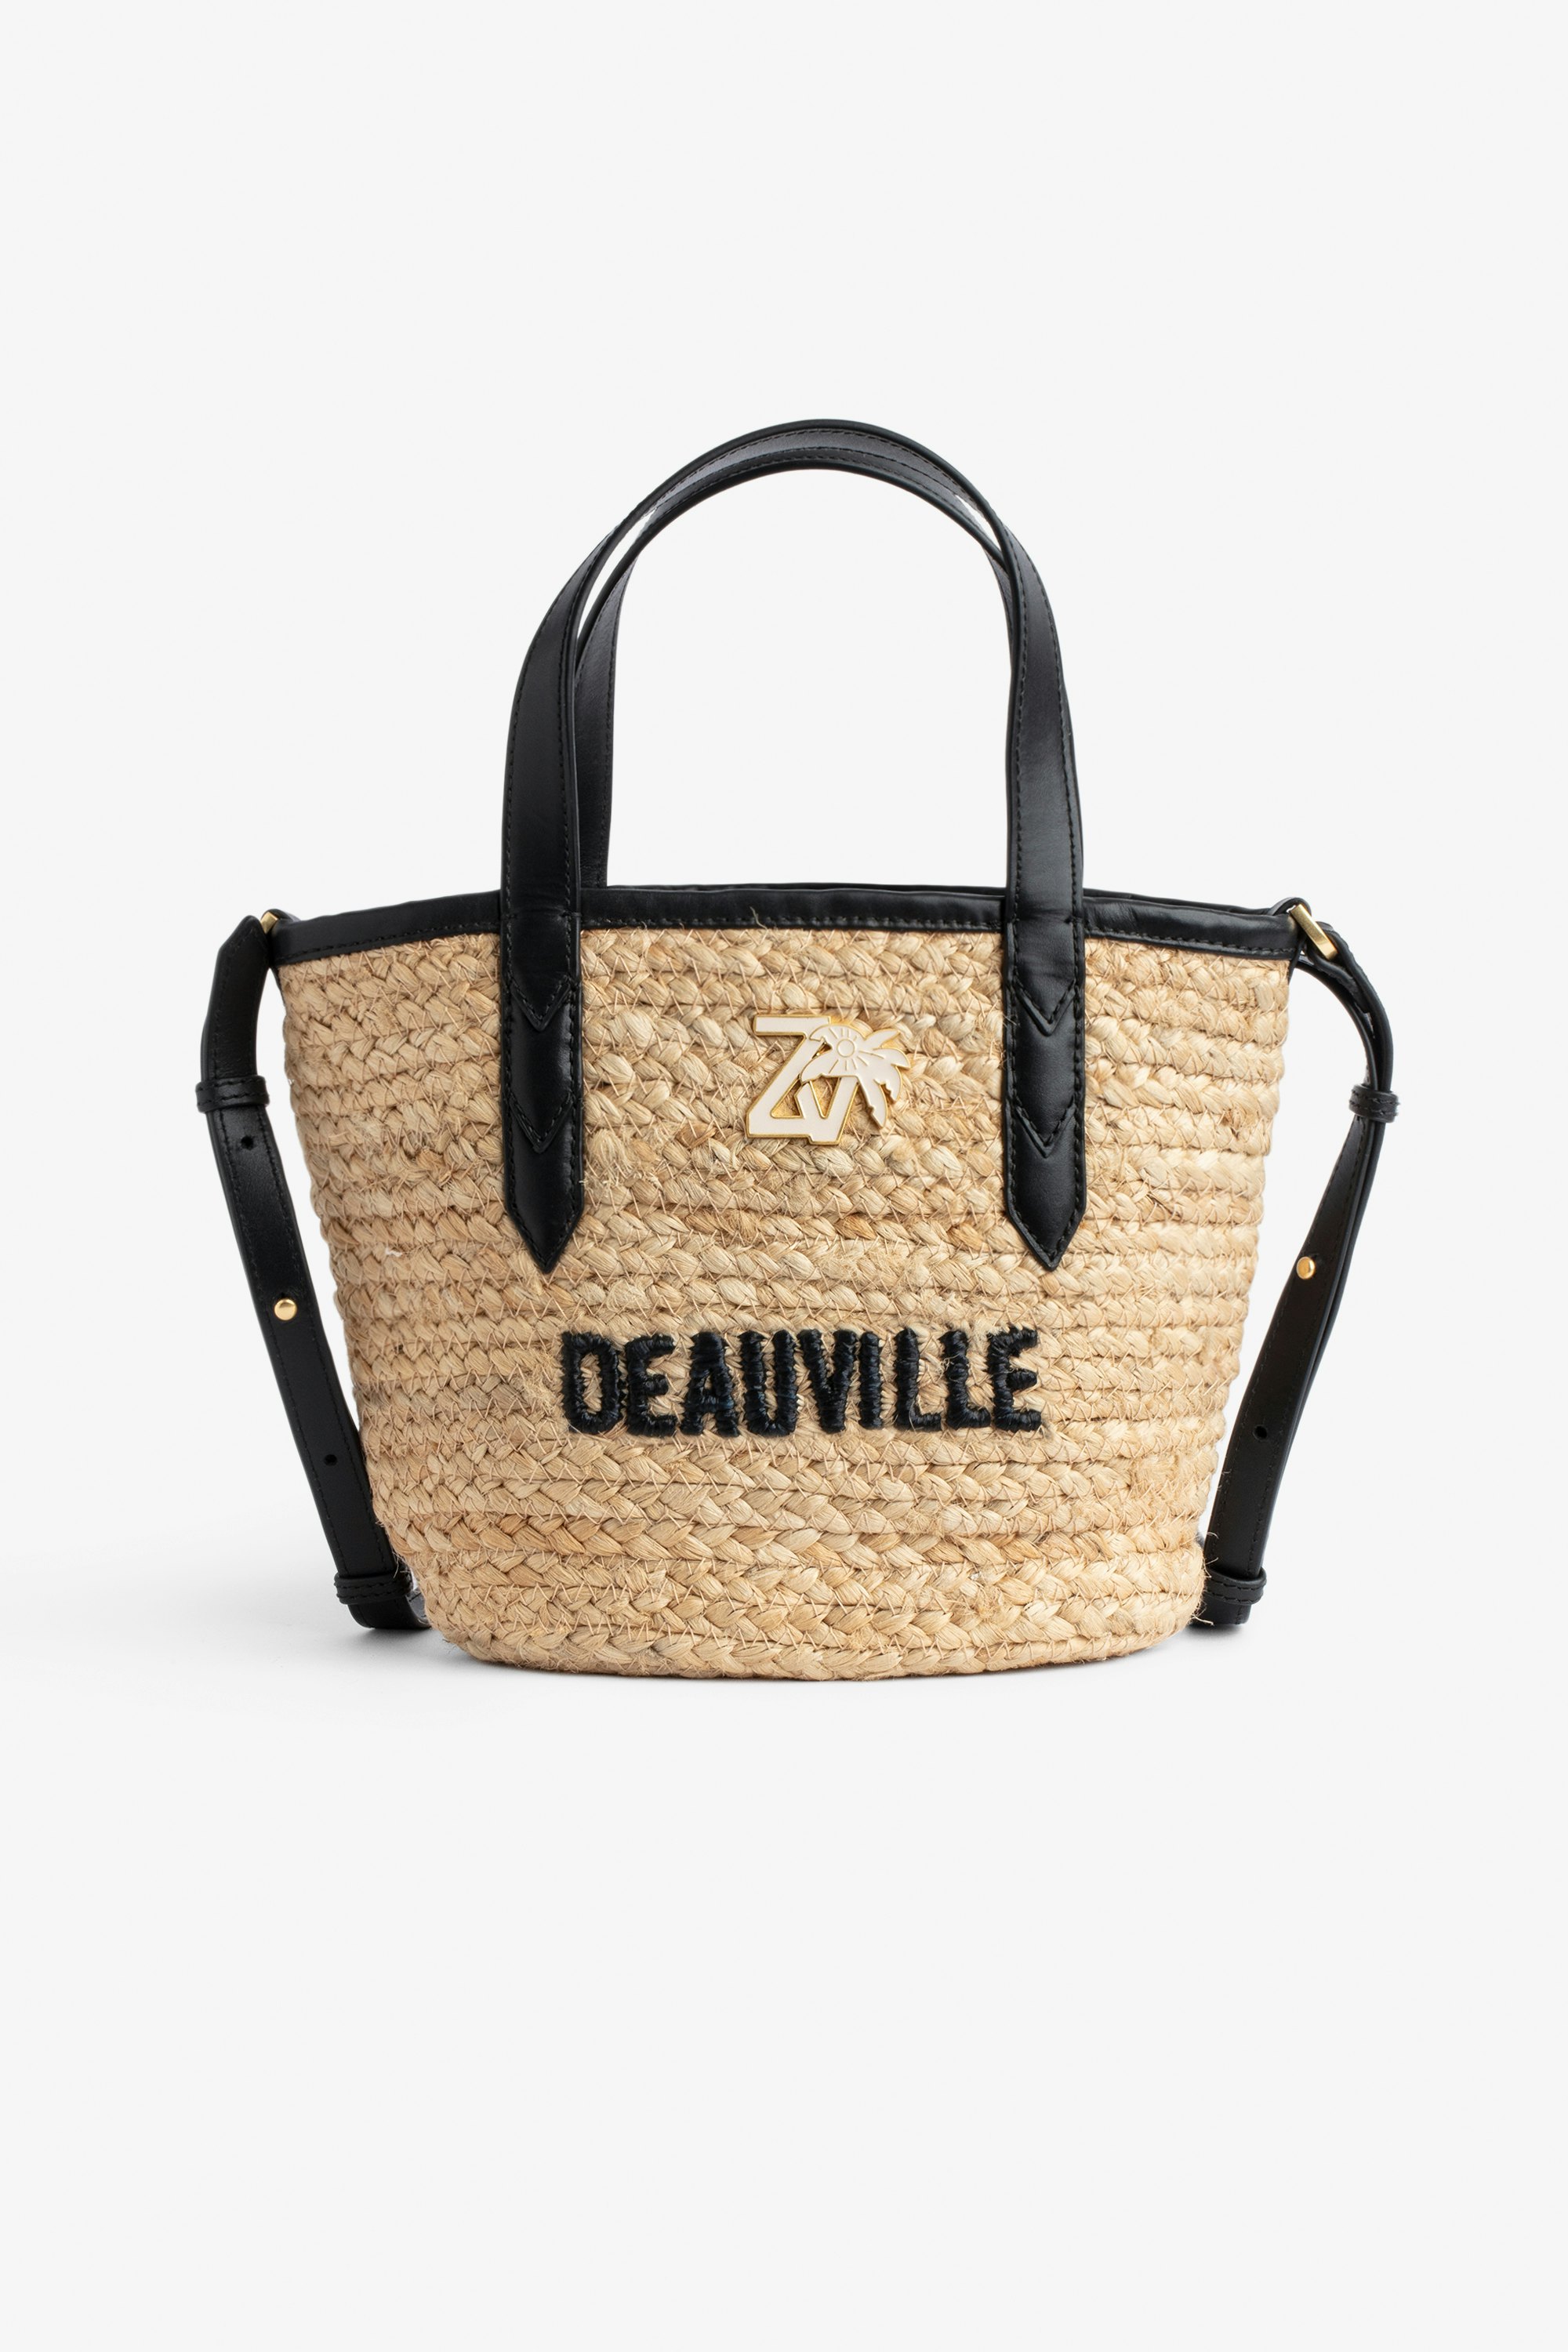 Tasche Le Baby Beach Bag - Damen-Strohtasche mit Schulterriemen aus schwarzem Leder, „Deauville“-Stickerei und ZV-Charm